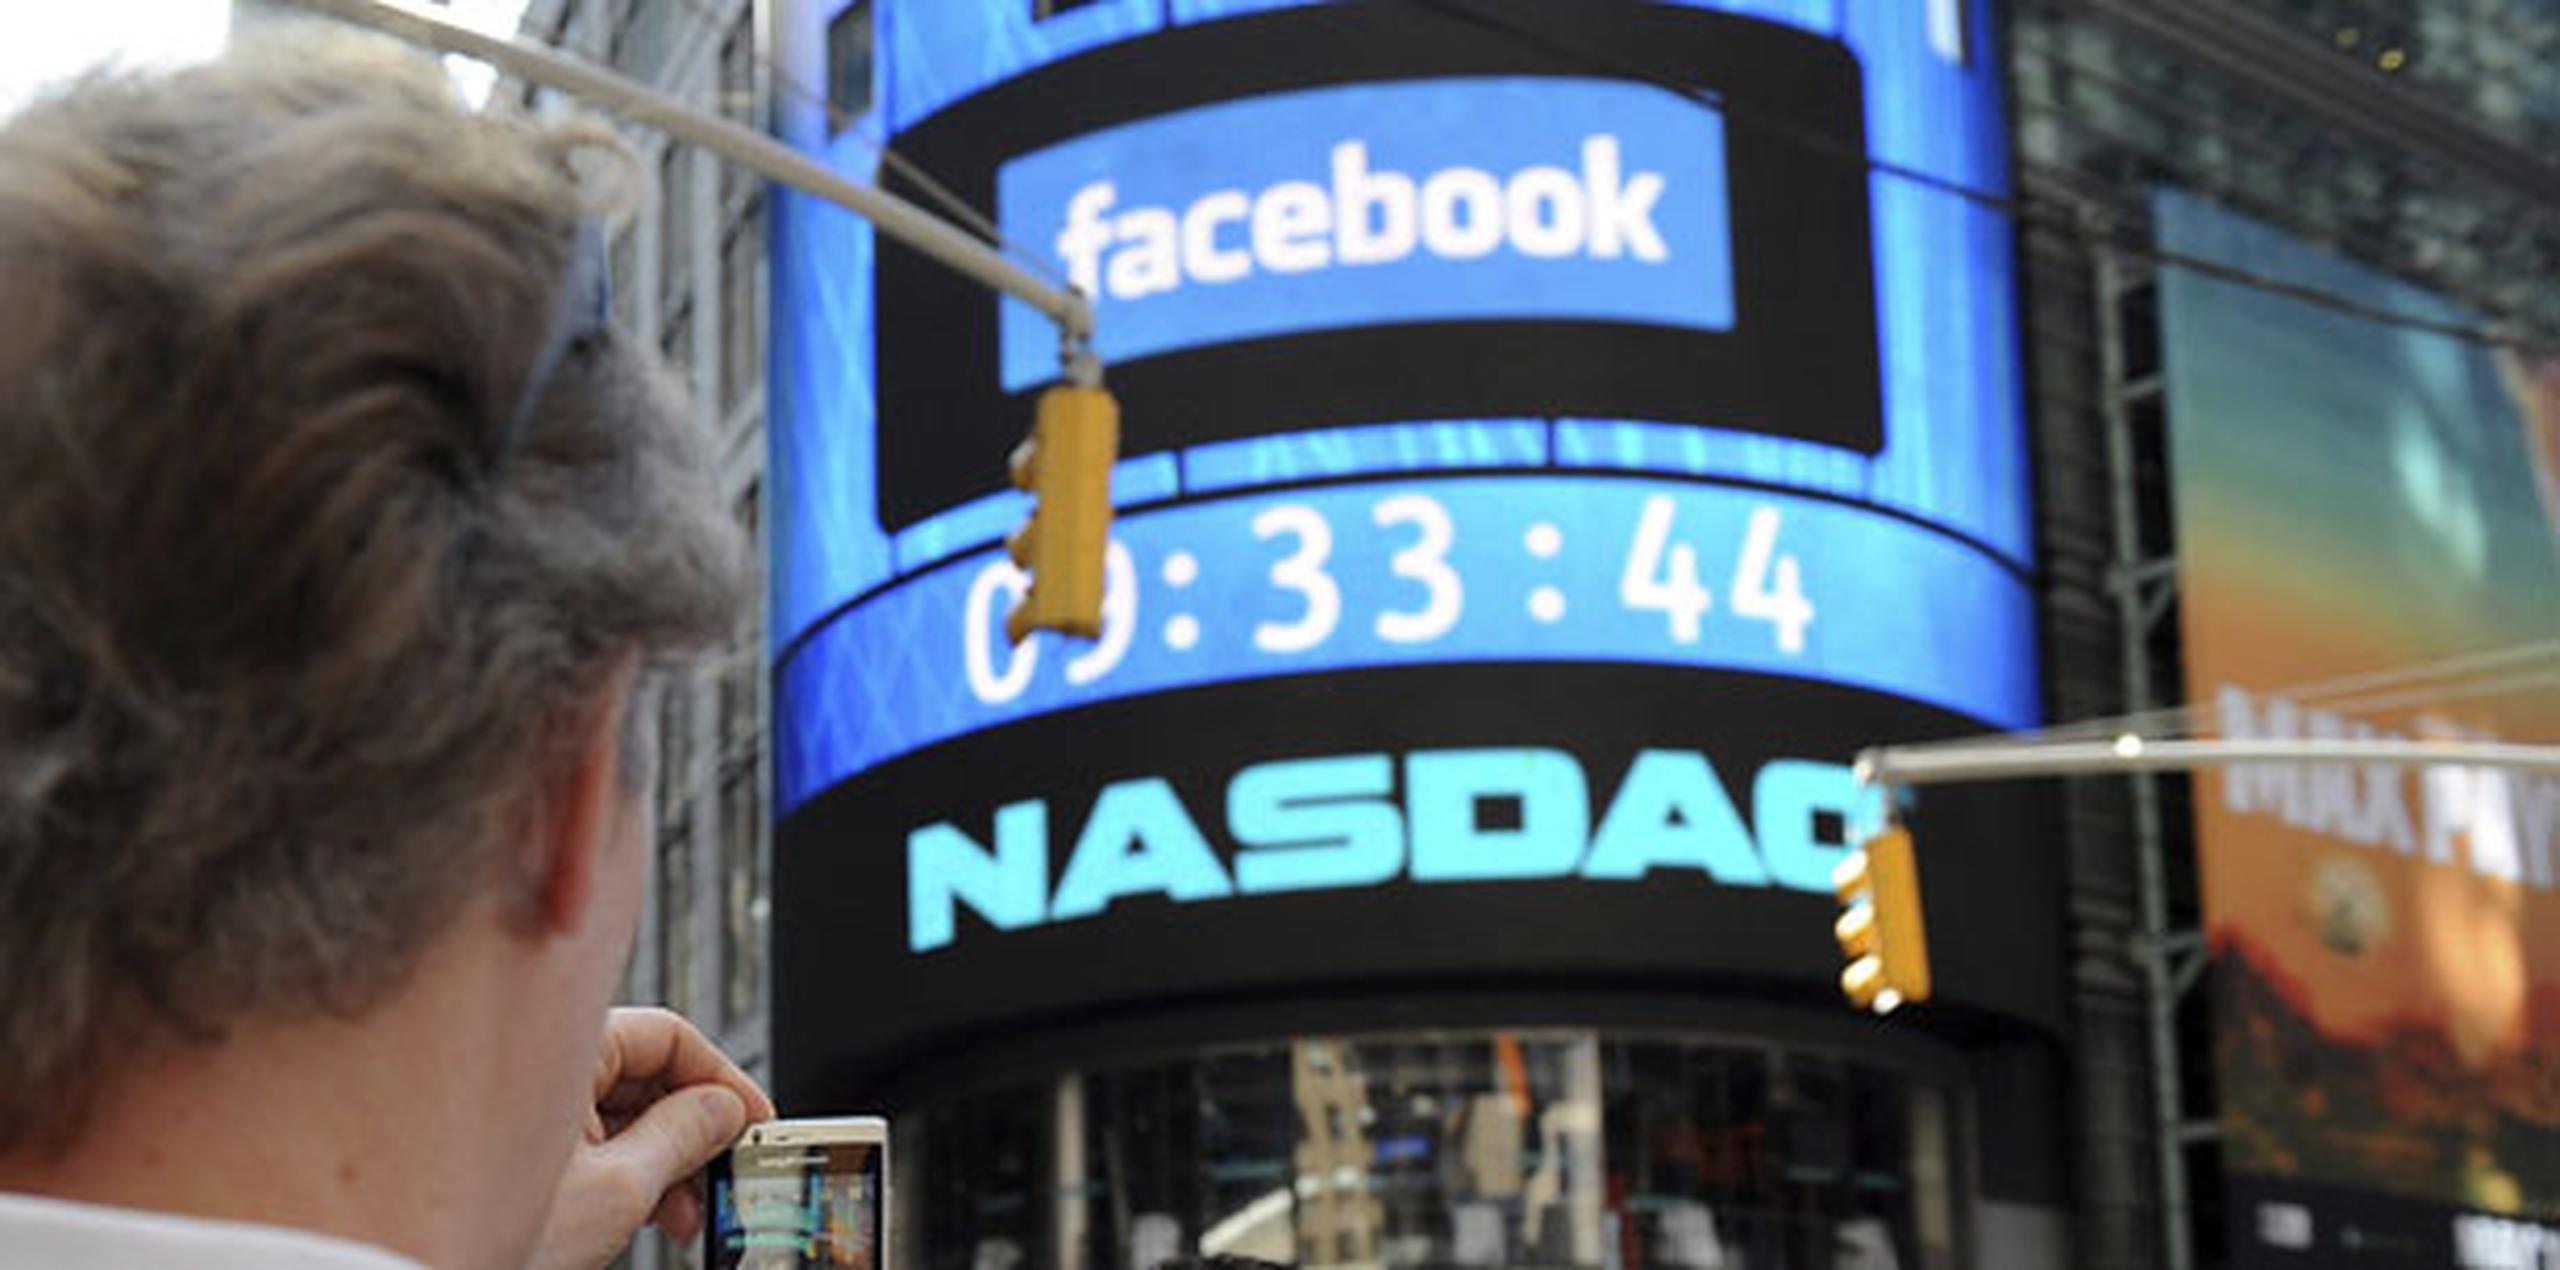 El desplome de Facebook marca un desafortunado récord: es la mayor pérdida de valor experimentada en un solo día por una firma en el mercado estadounidense. (Archivo)